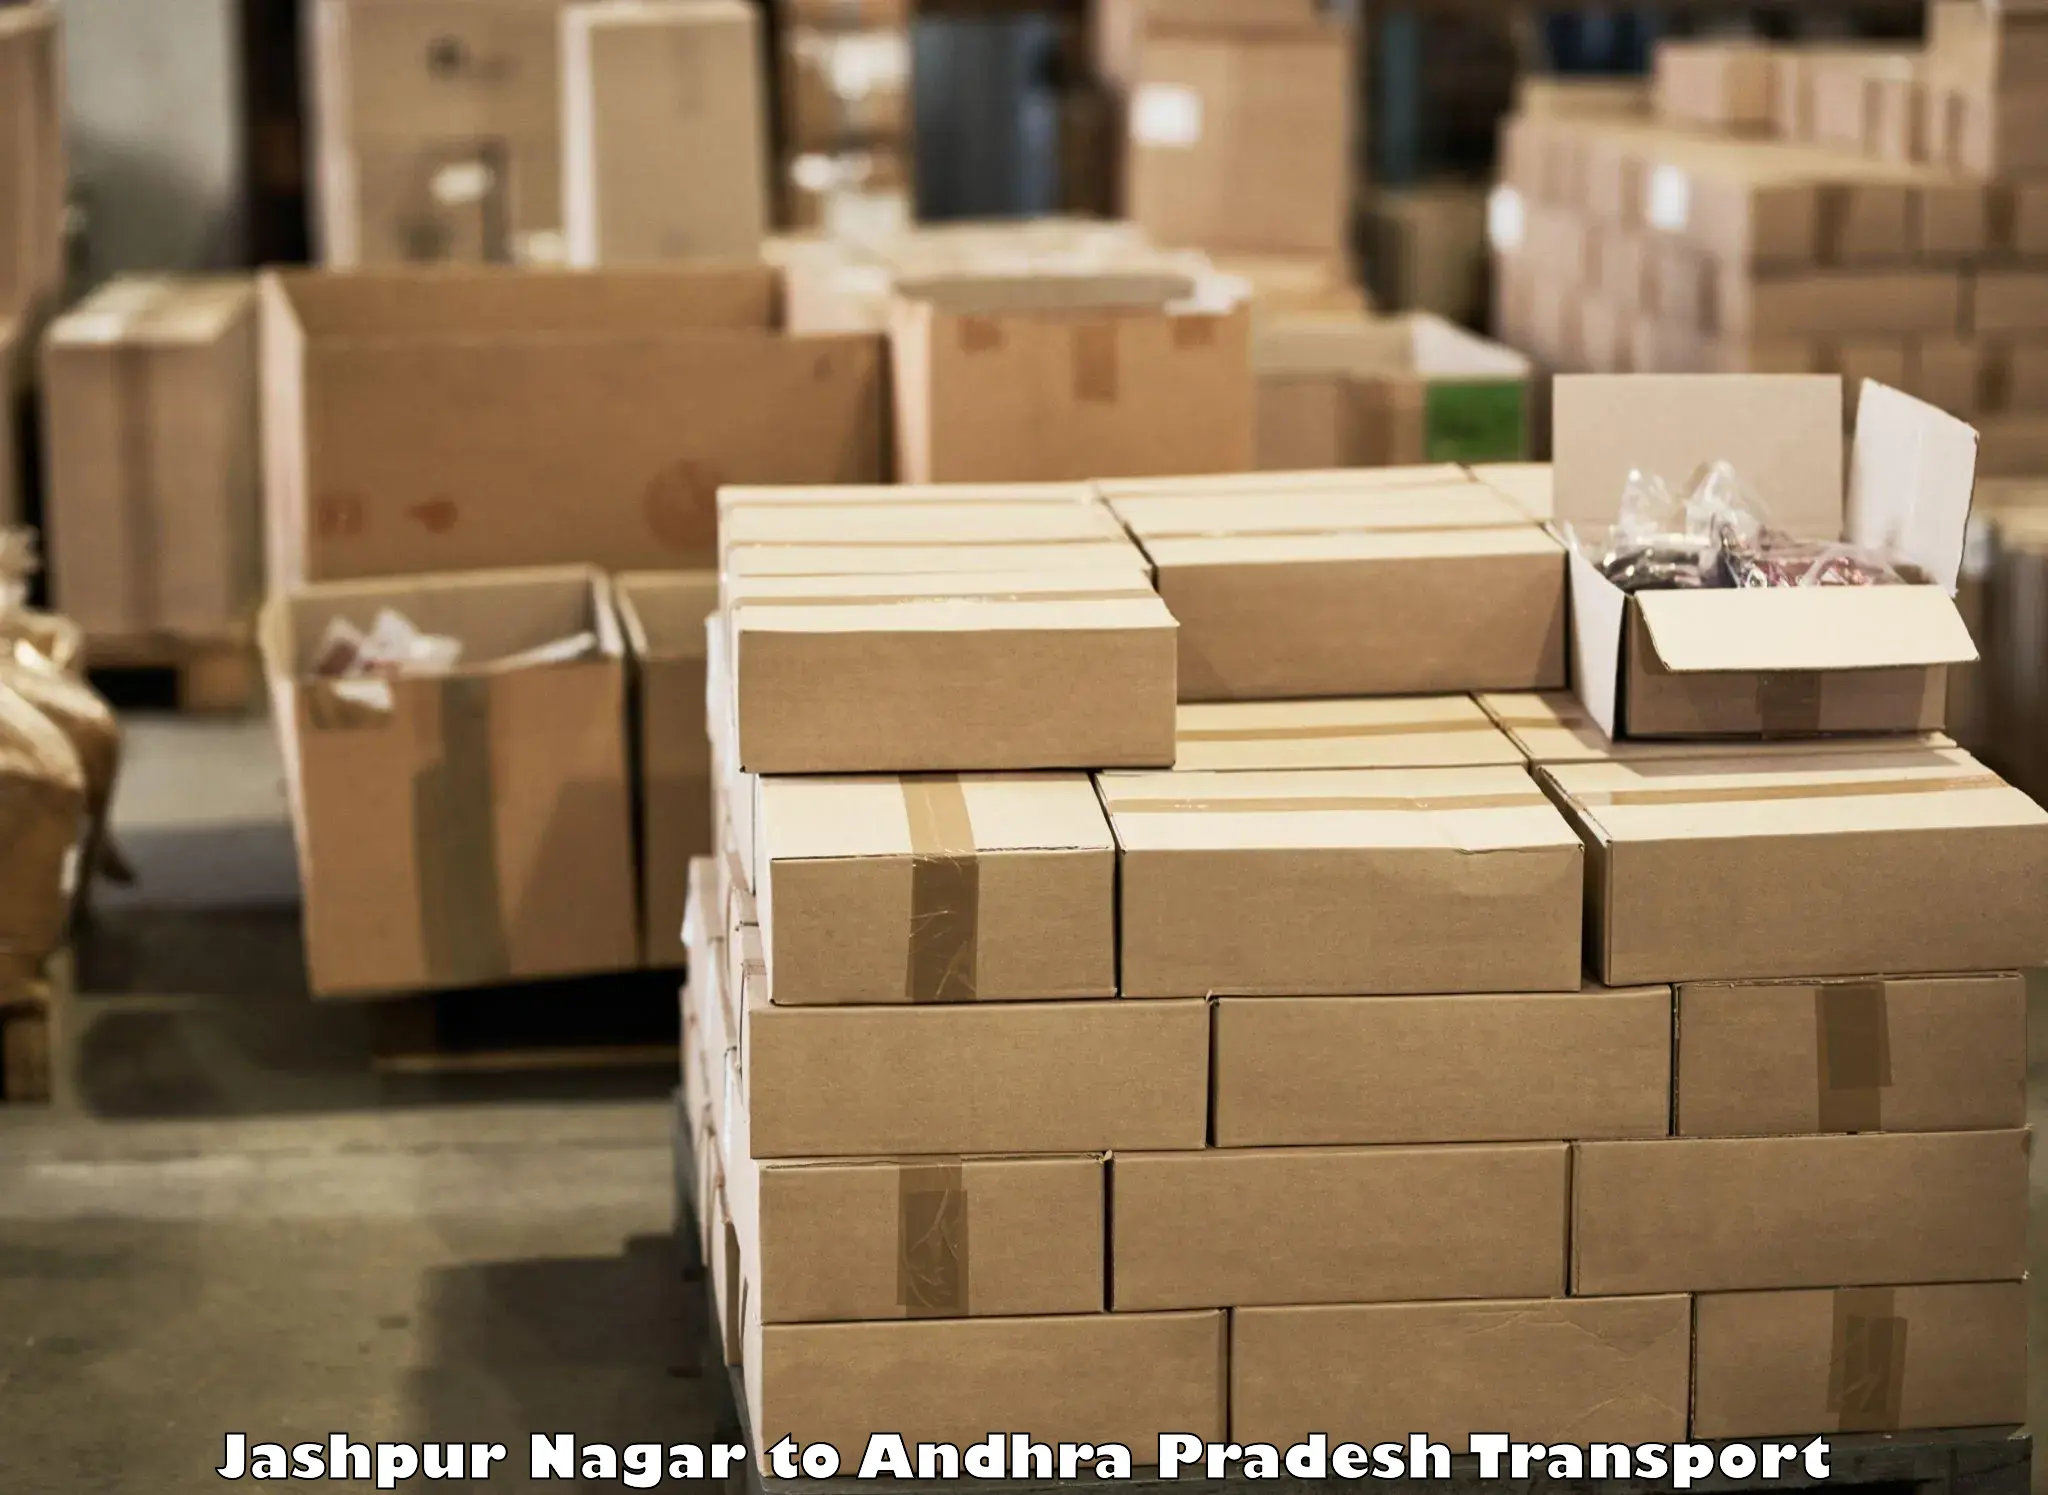 Lorry transport service Jashpur Nagar to Yerragondapalem